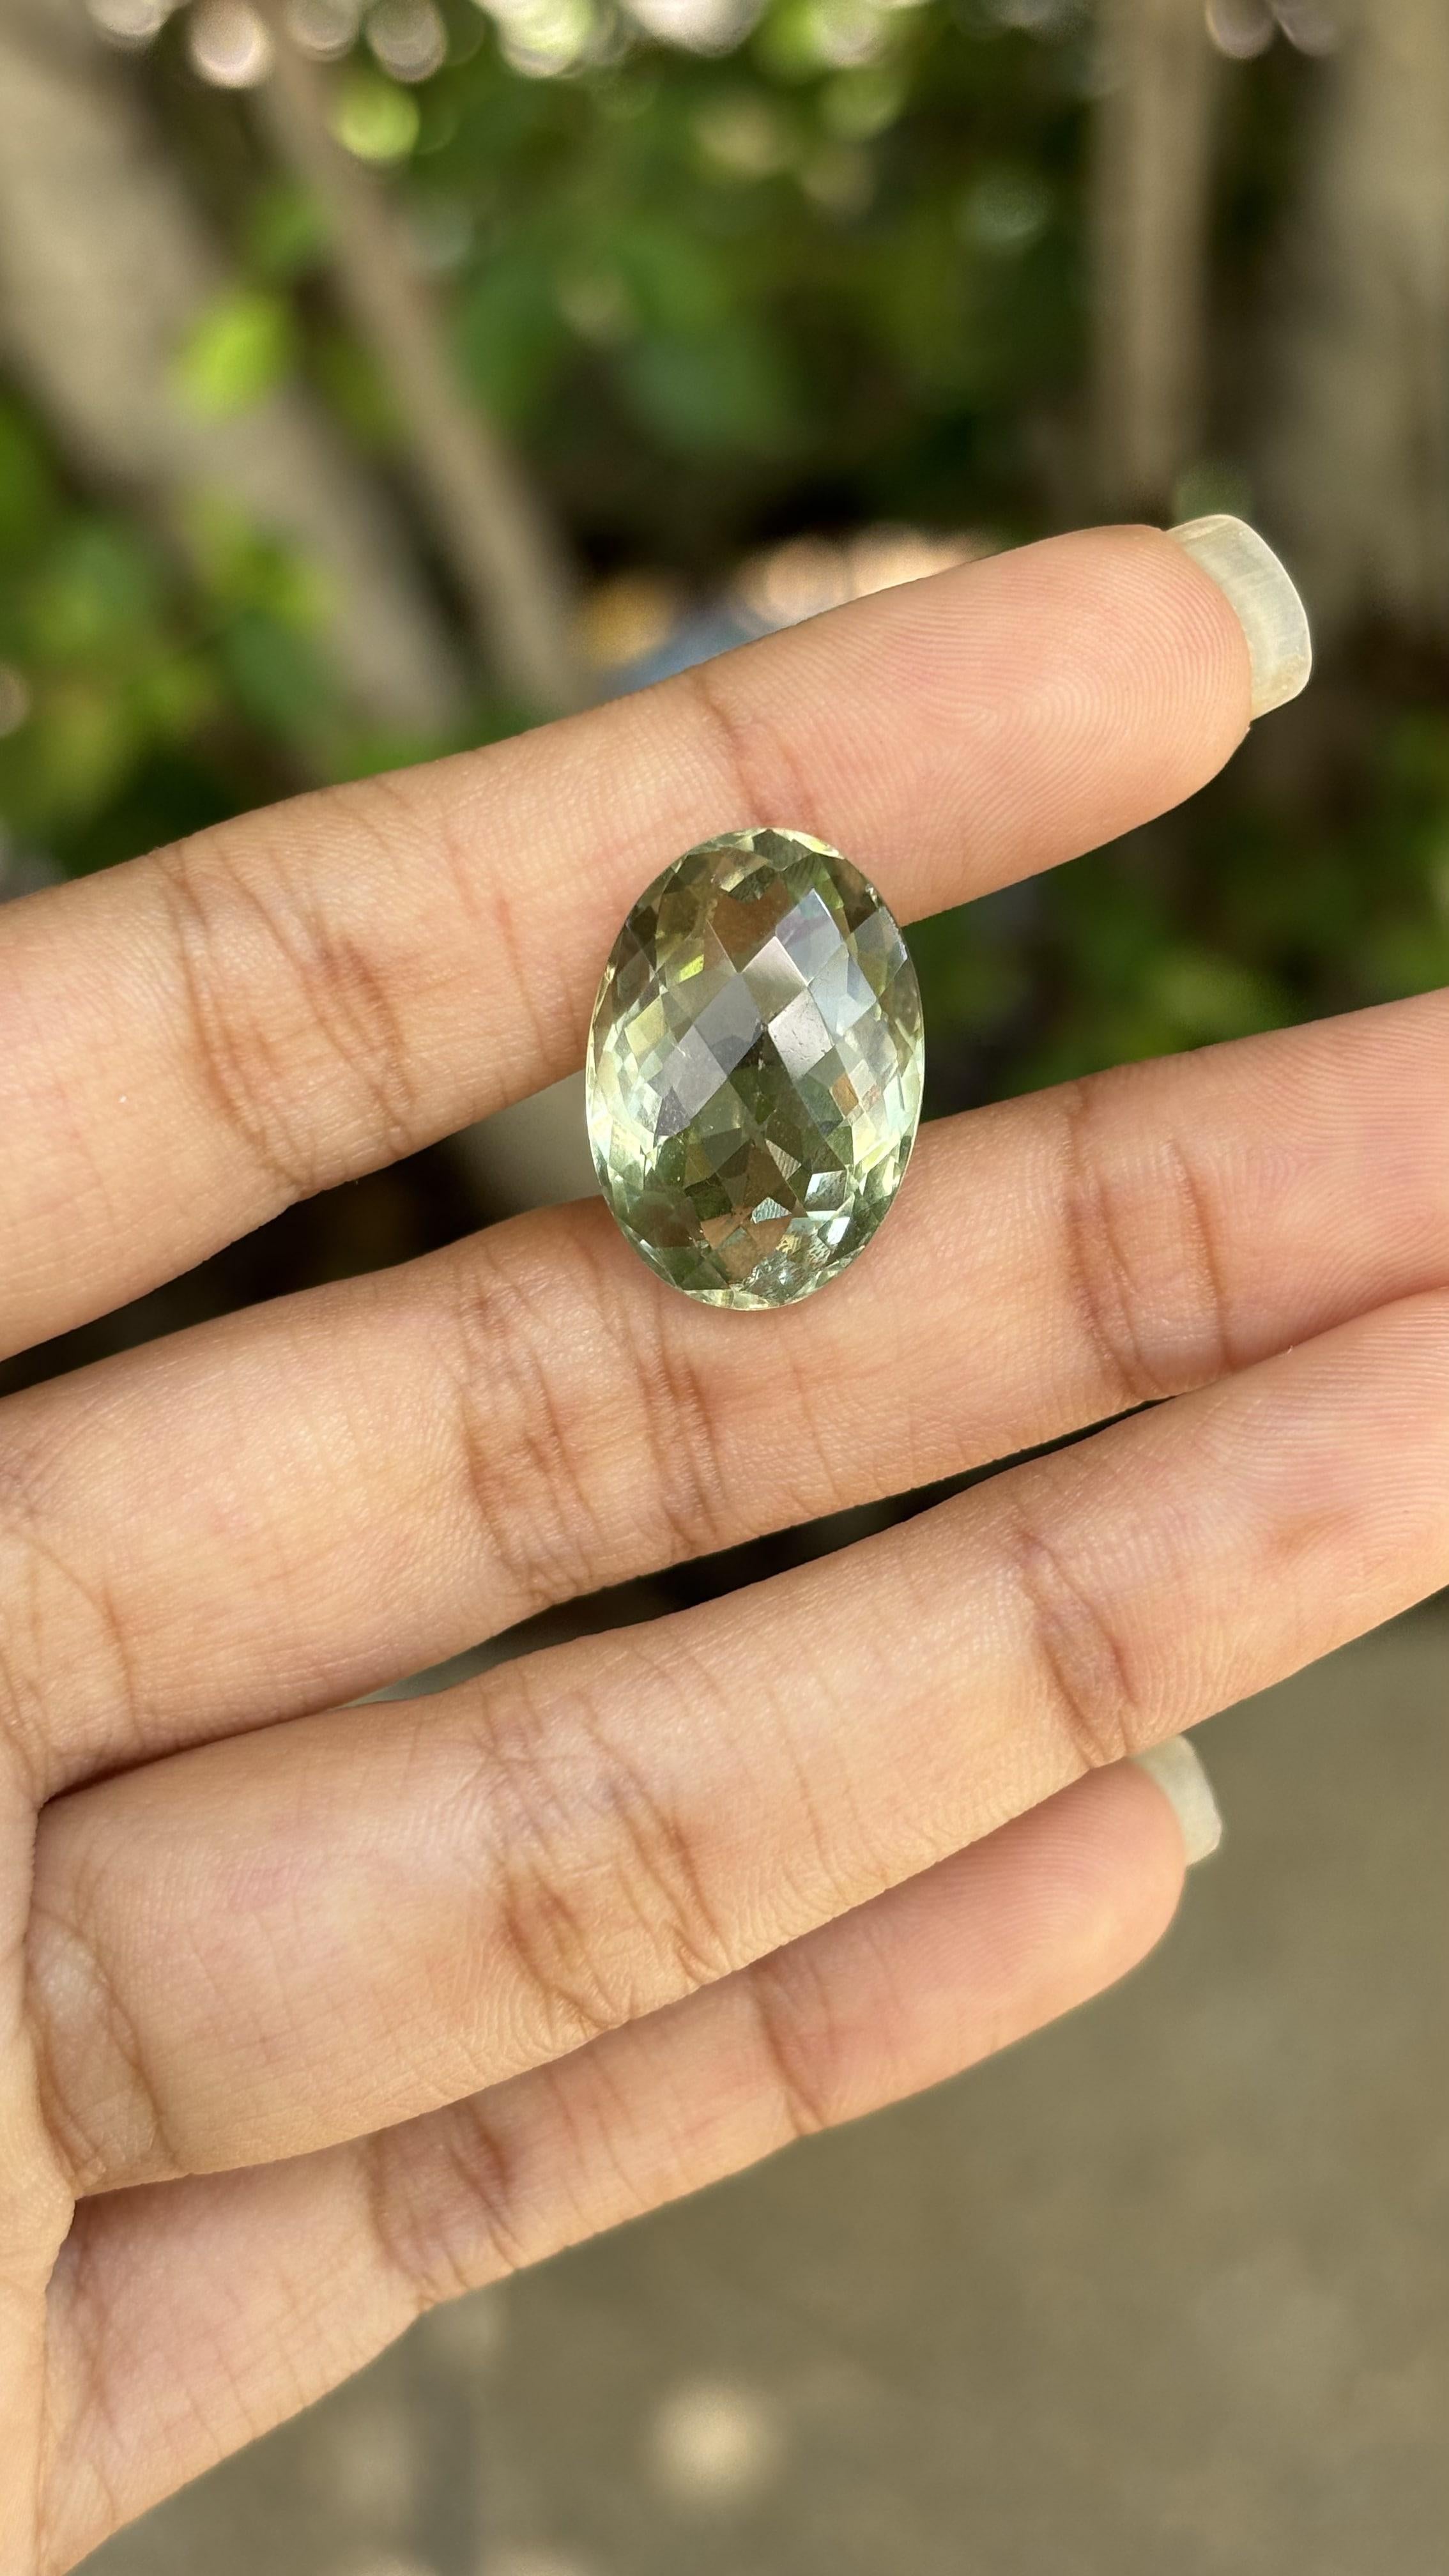 green quartz price per carat